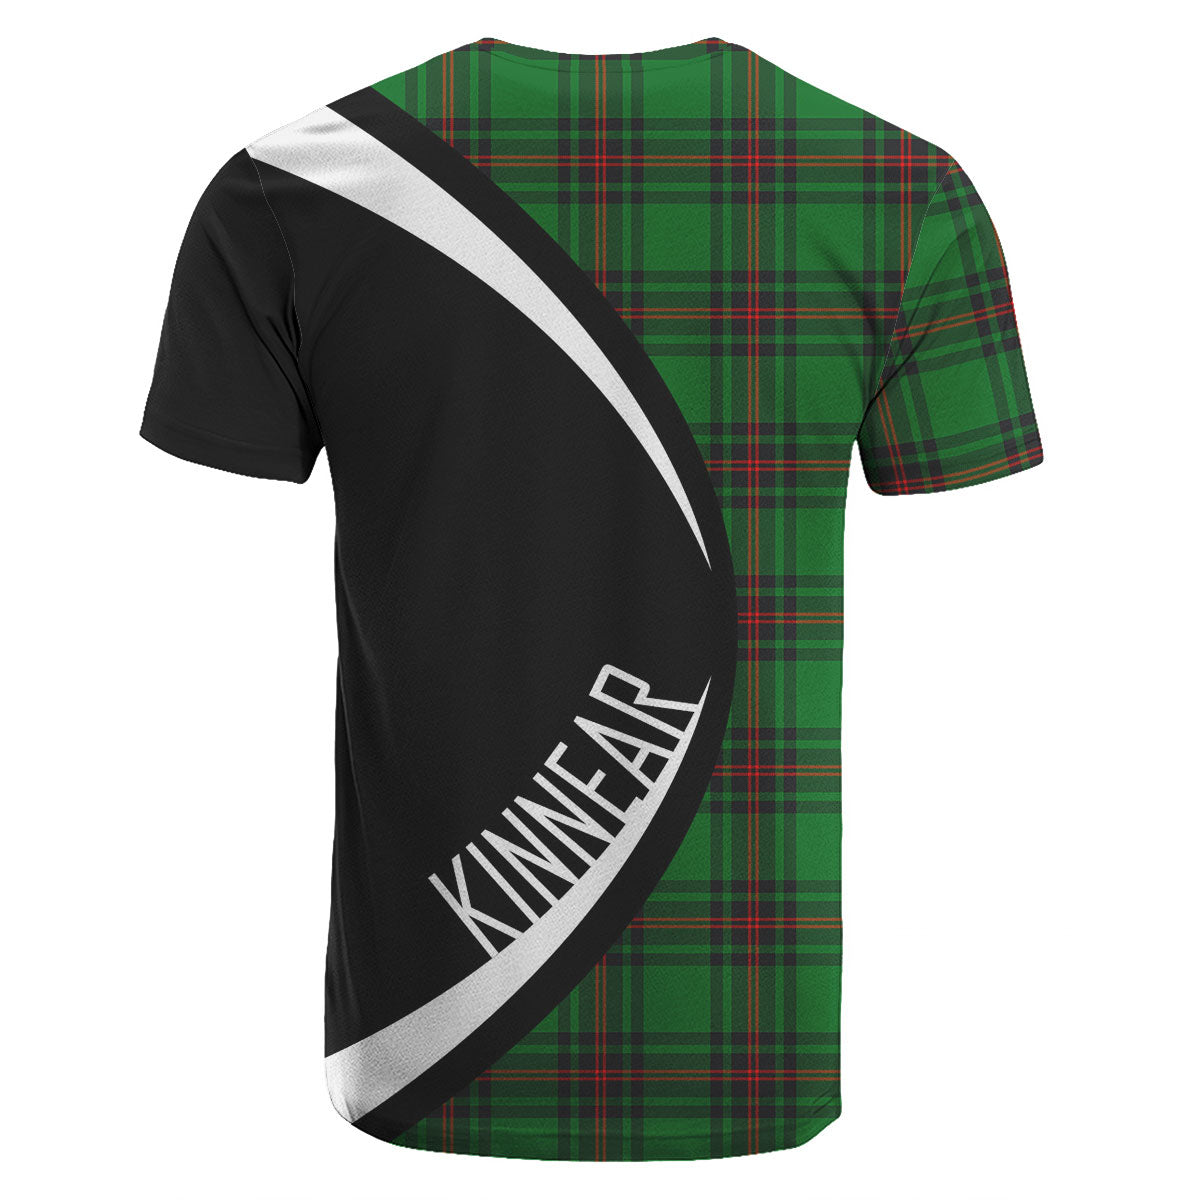 Kinnear Tartan Crest T-shirt - Circle Style